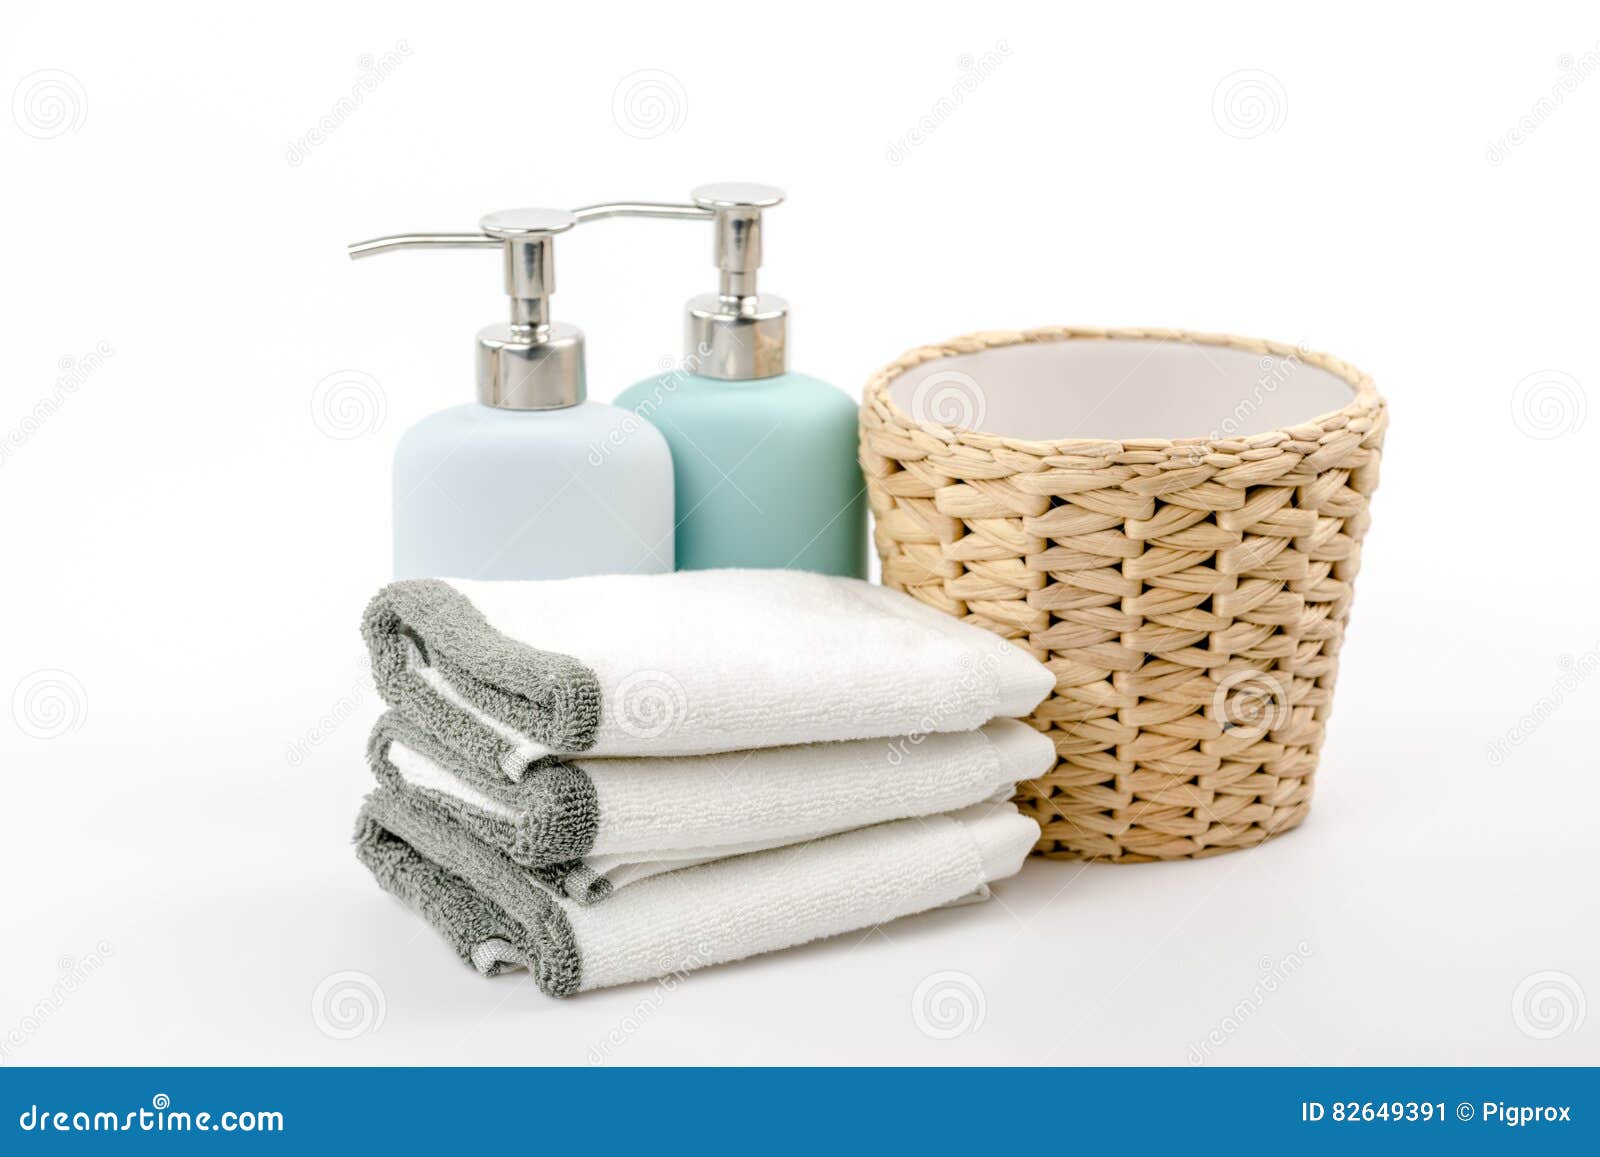 Шампунь полотенце. Шампунь и полотенце. Мыло и полотенце. Полотенце около раковины.